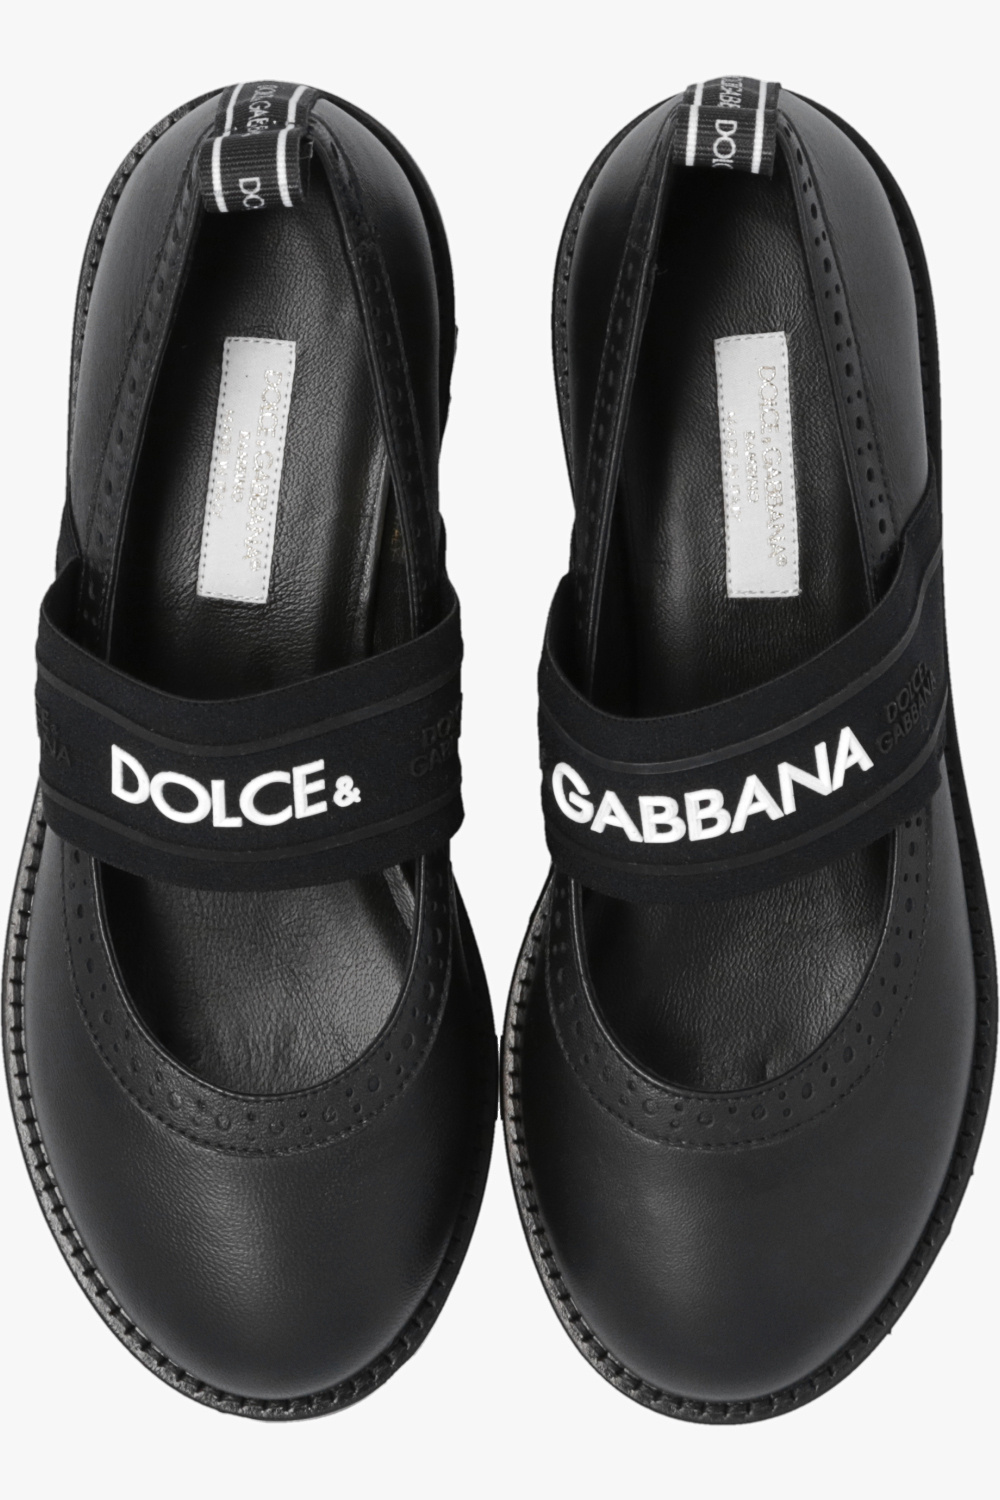 Dolce & Gabbana Kids buy dkny isha logo sandal